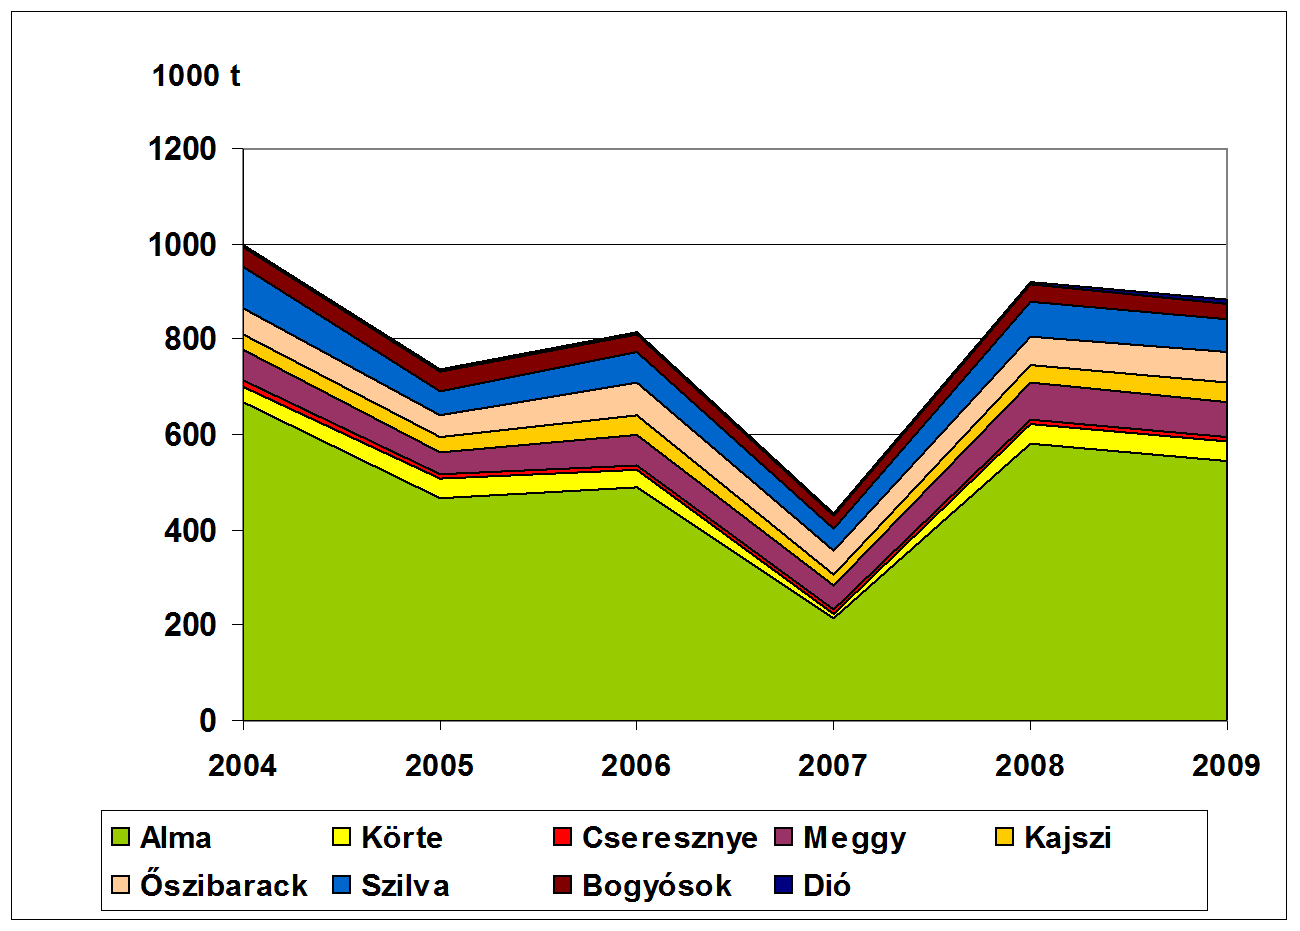 Плодоводство Венгрии 2004-2009